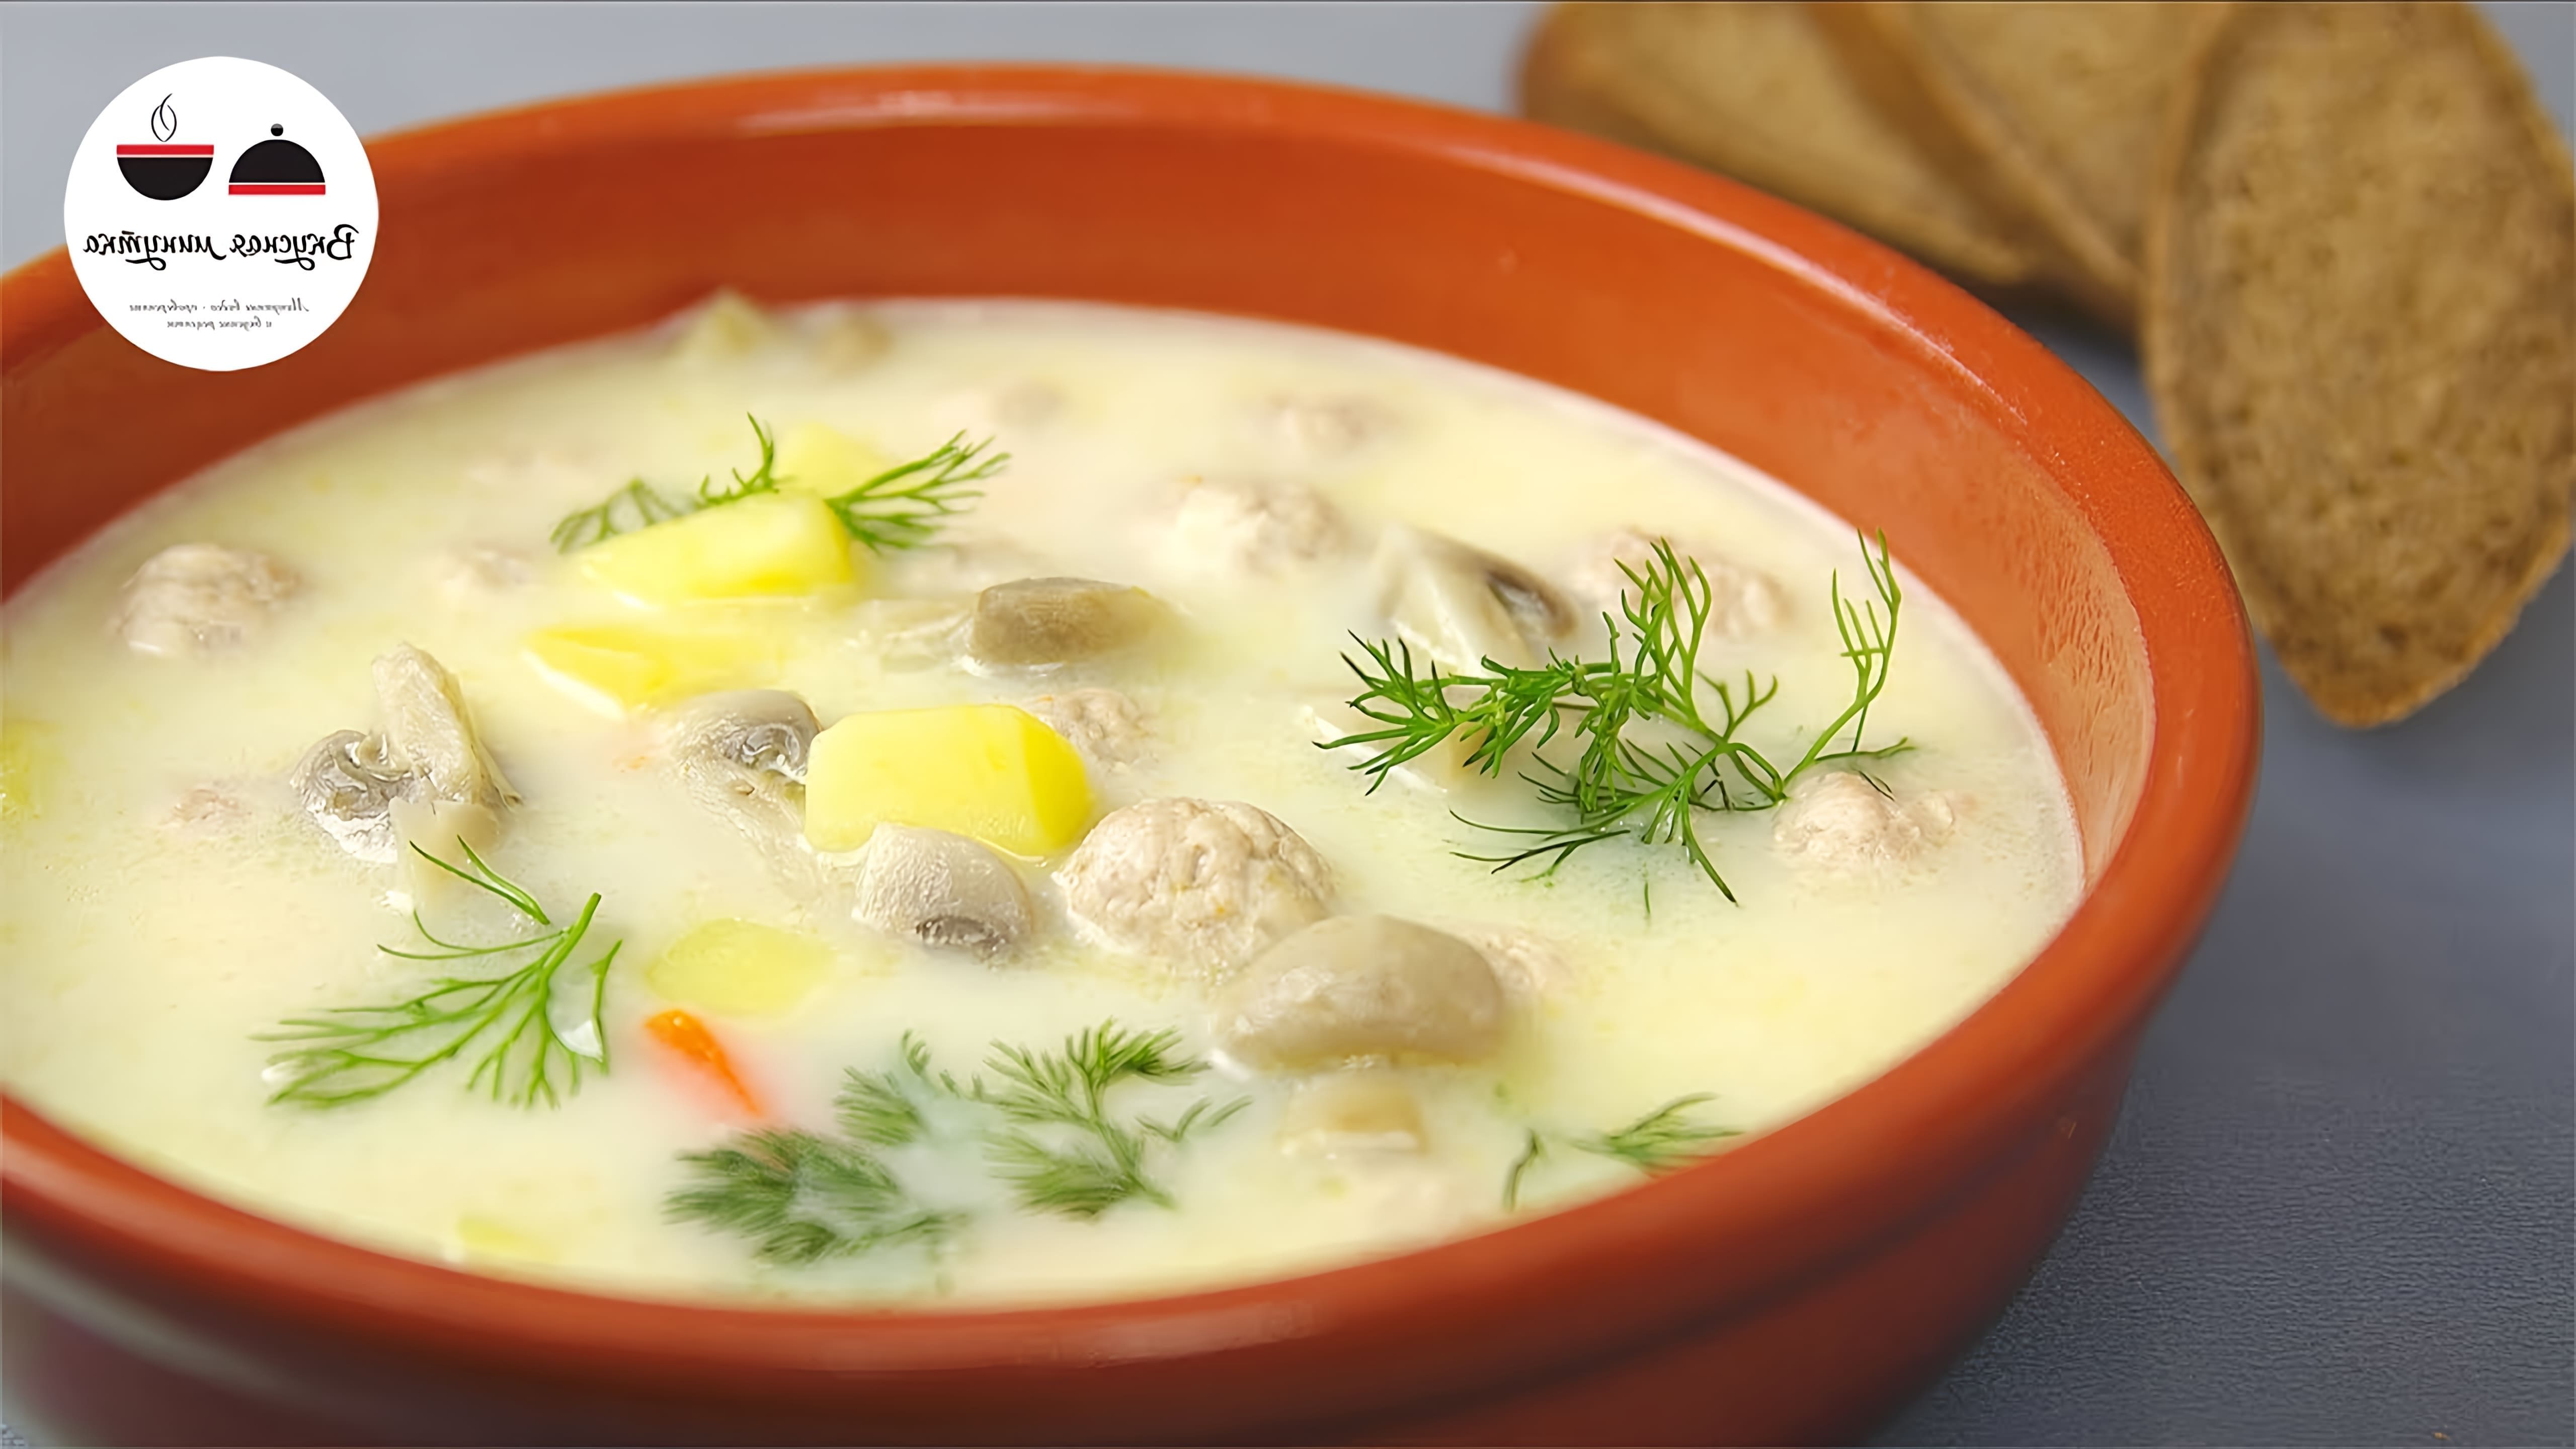 "Сырный суп - мой любимый рецепт" - так называется видео-ролик, в котором я рассказываю о своем любимом блюде - сырном супе